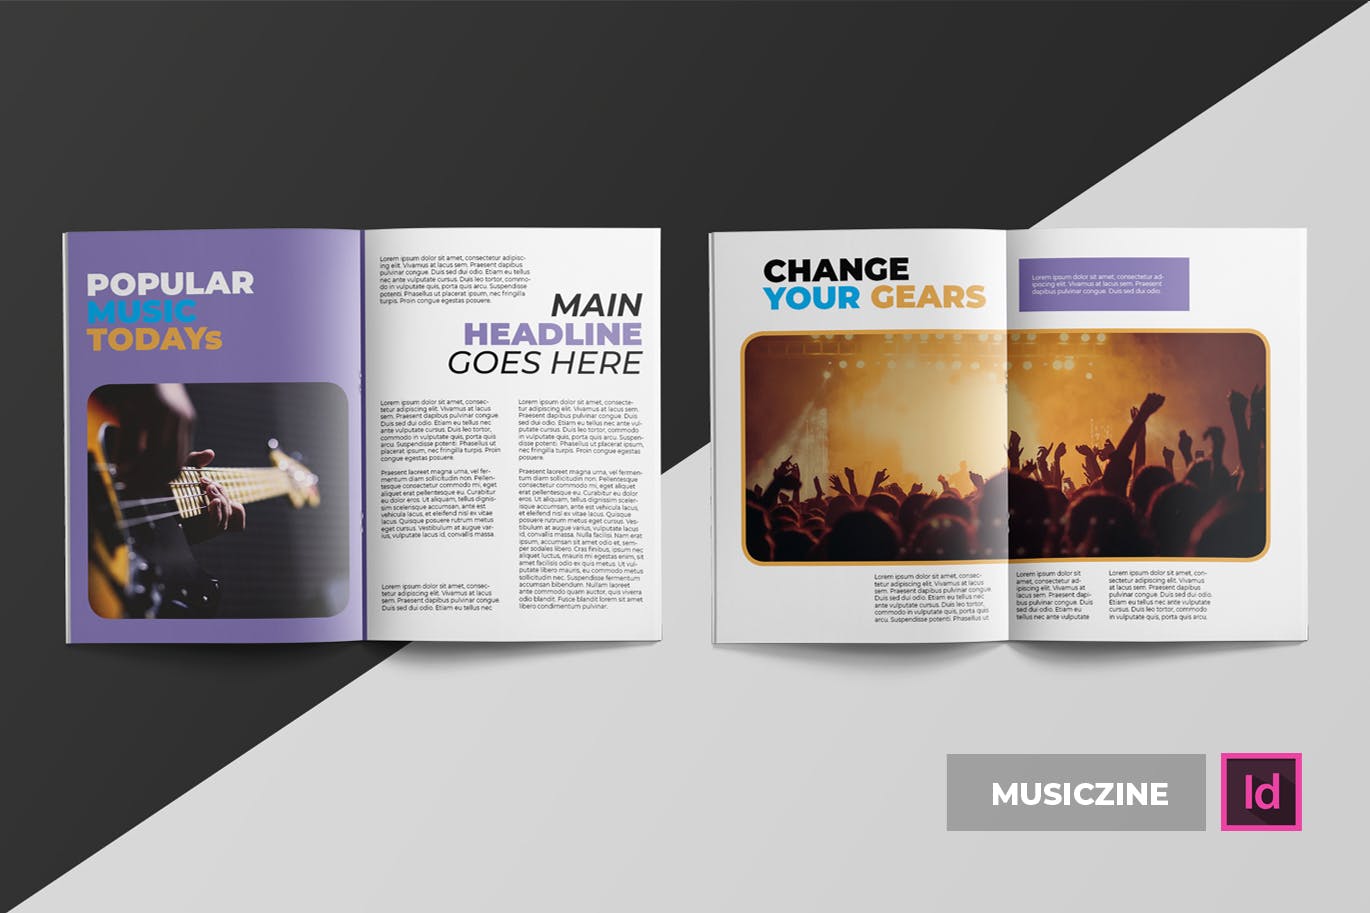 音乐主题专业第一素材精选杂志排版设计INDD模板 Musiczine | Magazine Template插图(2)